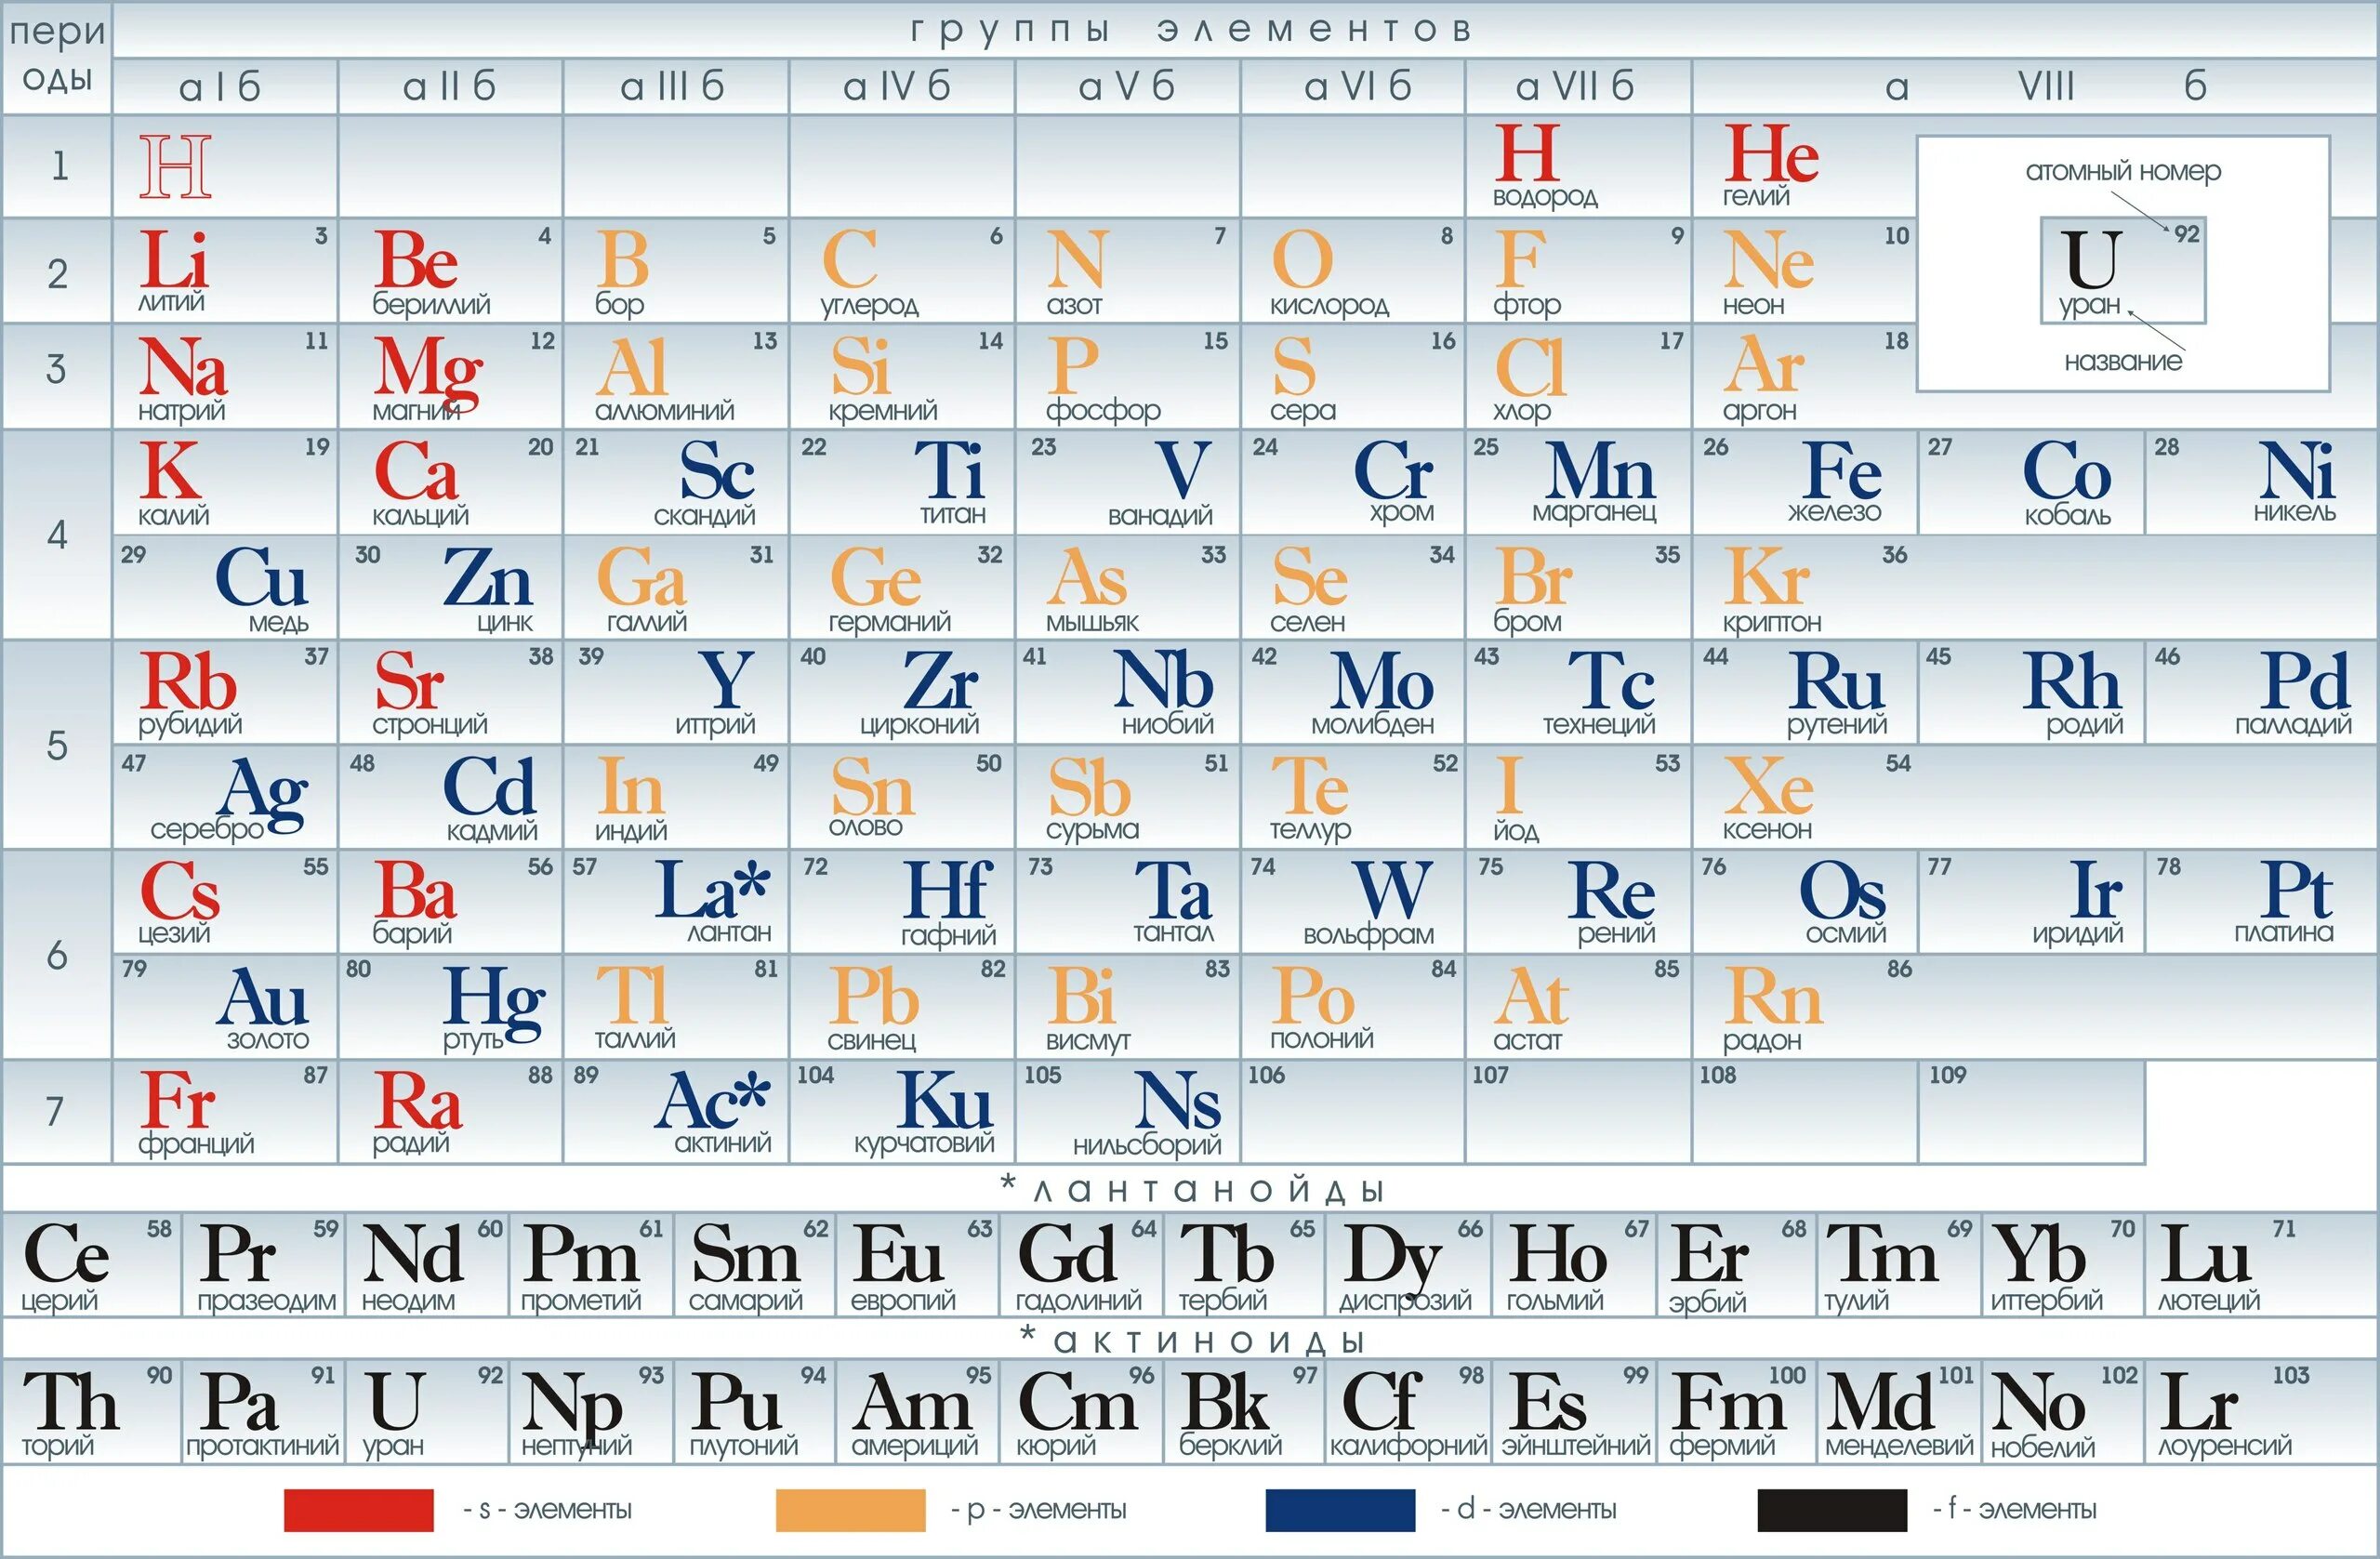 В названиях этих элементов есть. Периодическая система химических элементов таблица. Периодич табл Менделеева. Таб таблица Менделеева. Знаки химических элементов периодическая таблица д.и Менделеева.